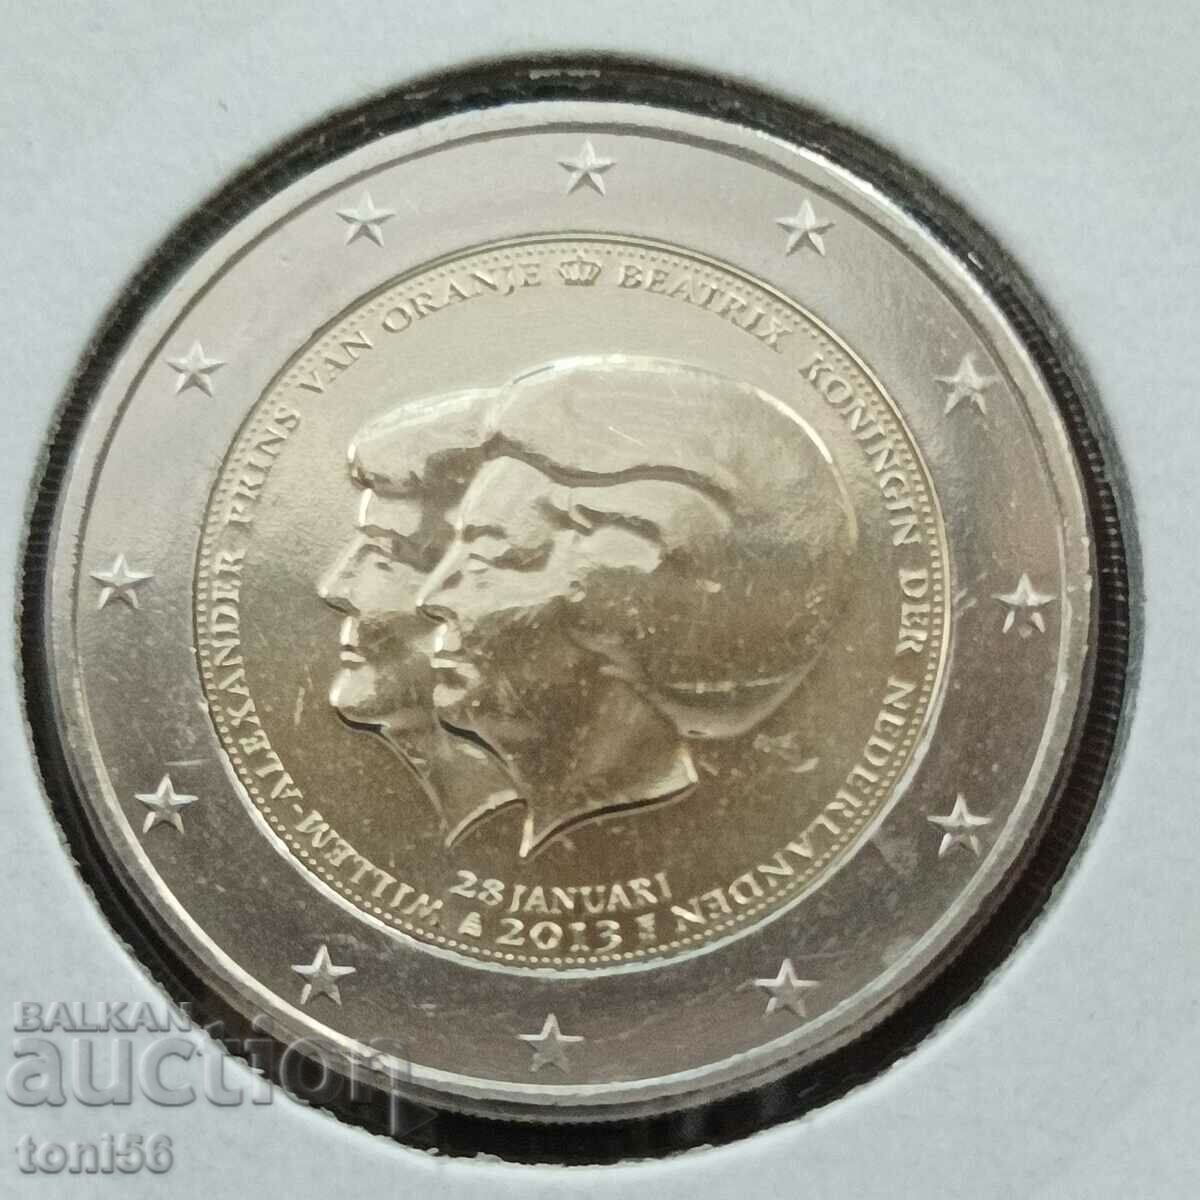 Нидерландия 2 евро 2013 - Вилем- Александър принц